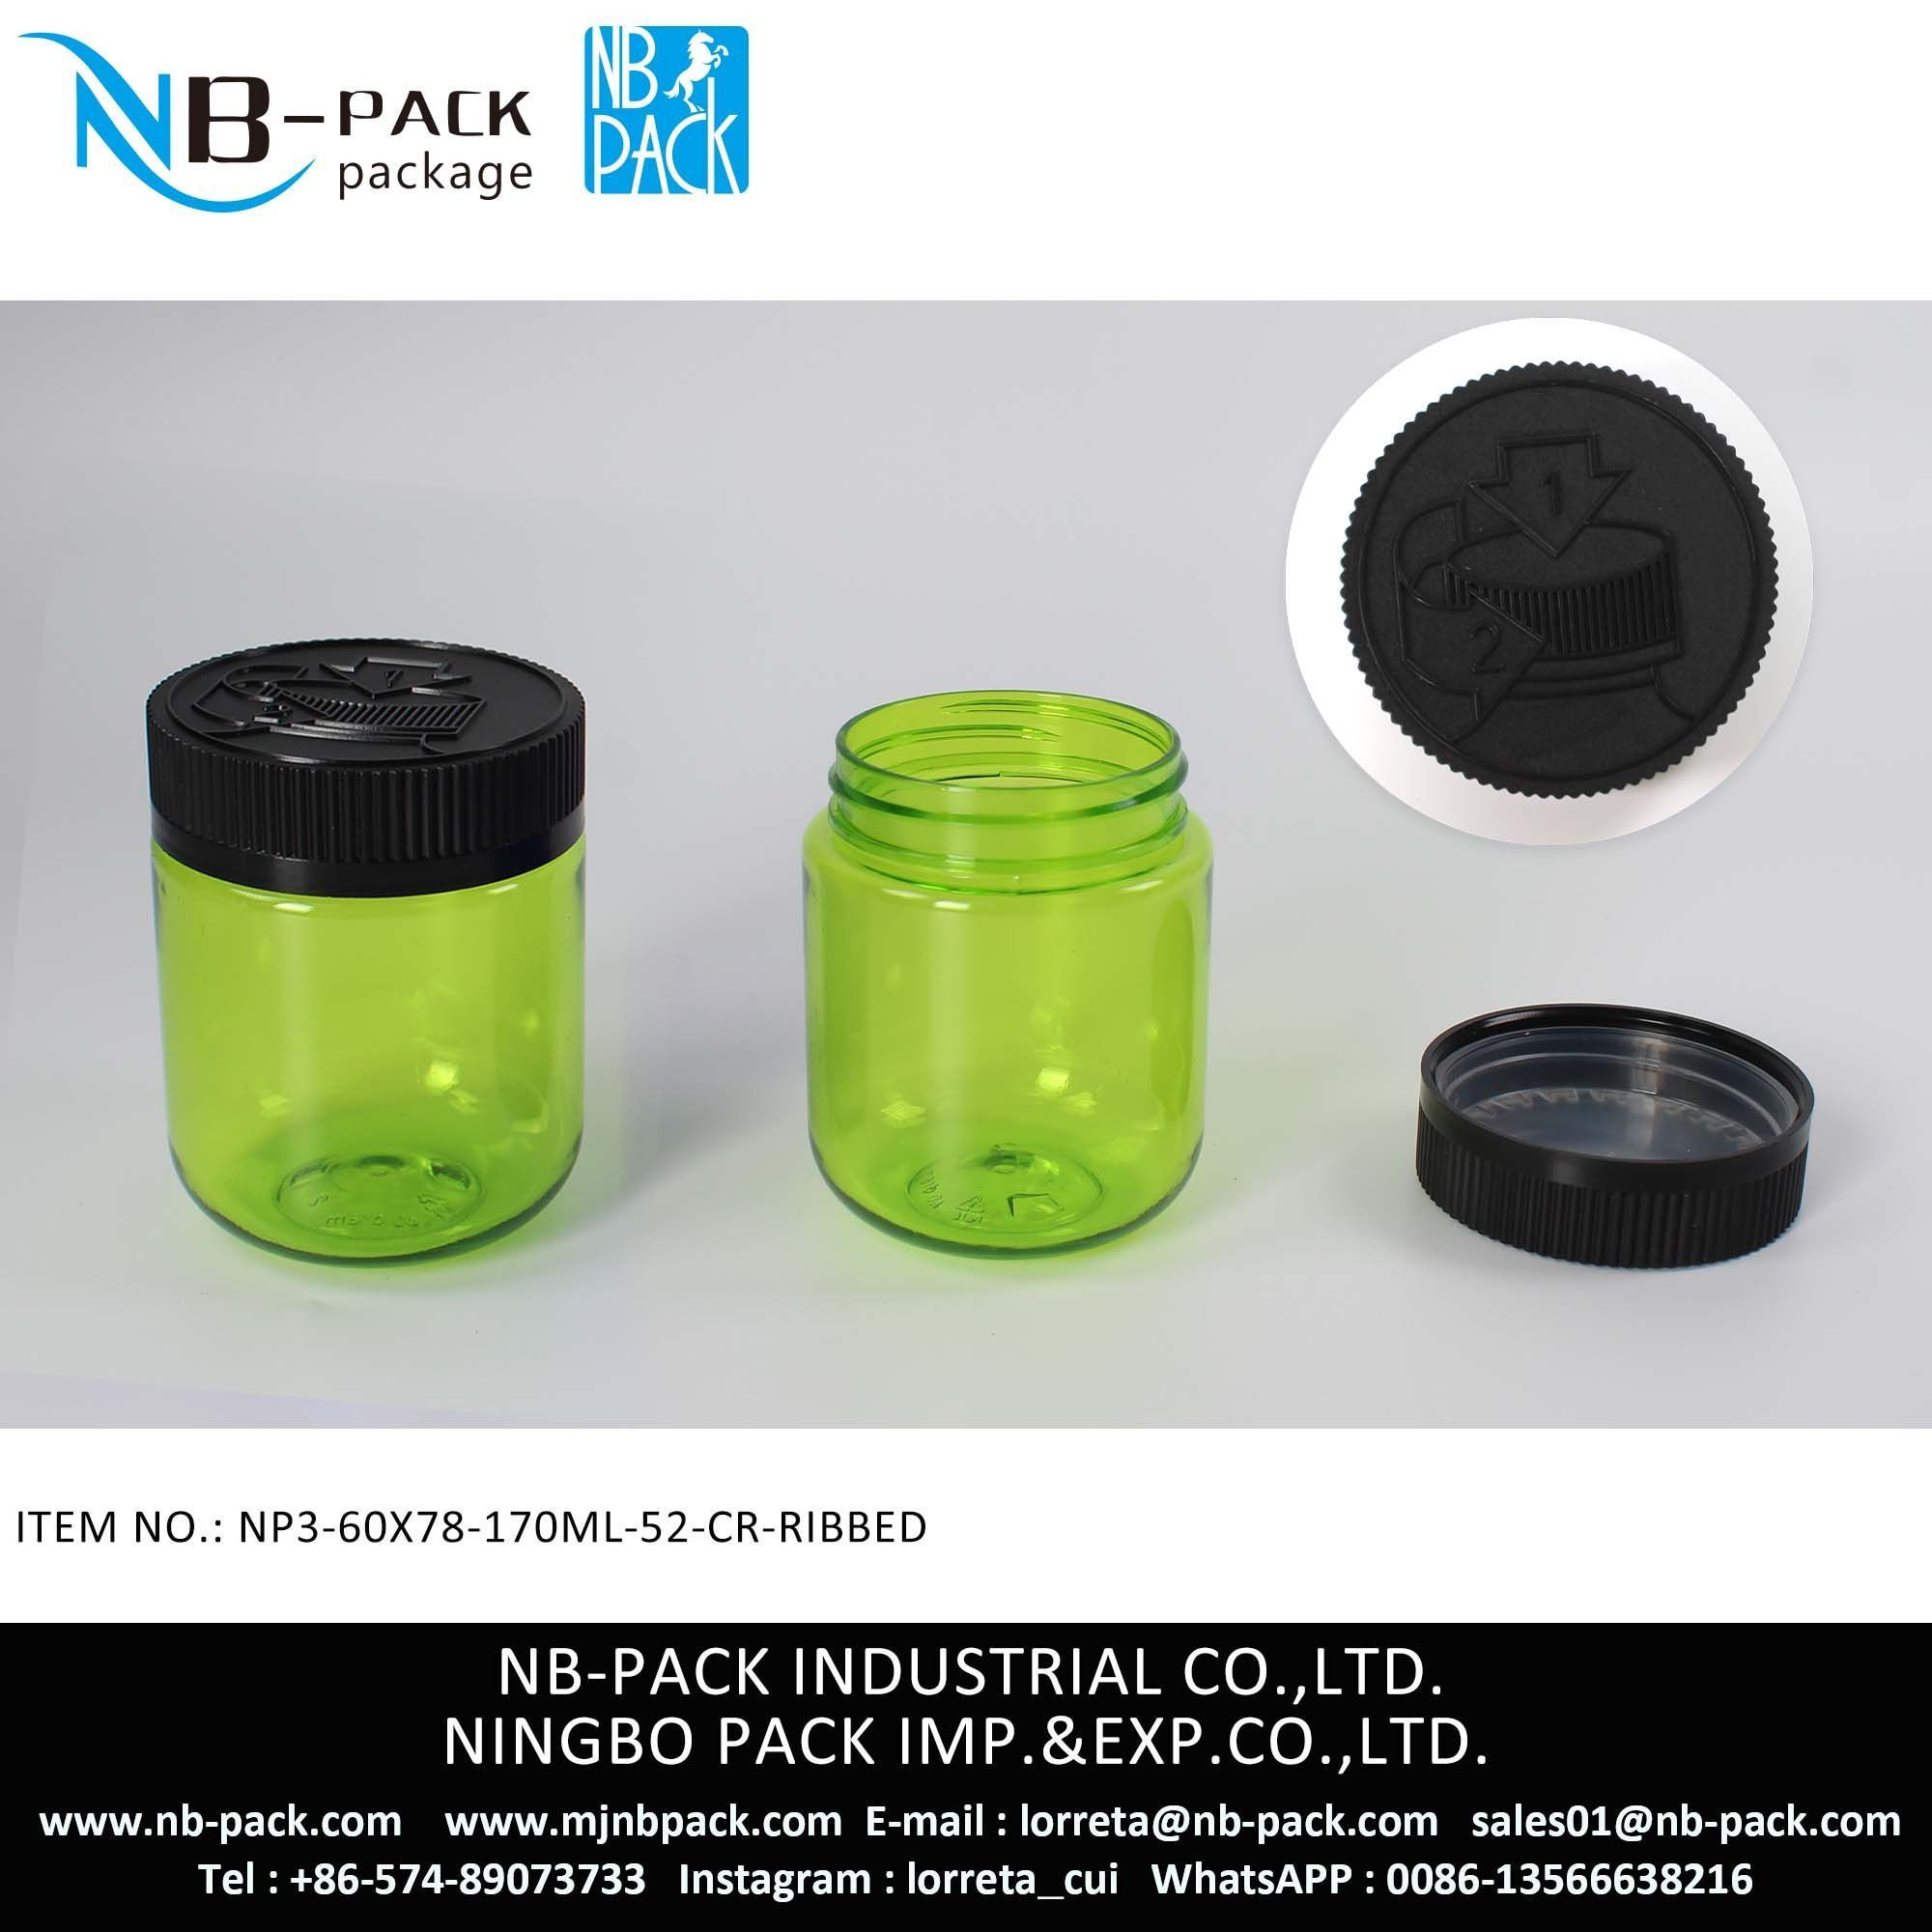 160ml Push And Turn Cap Child Resistant Plastic Jar